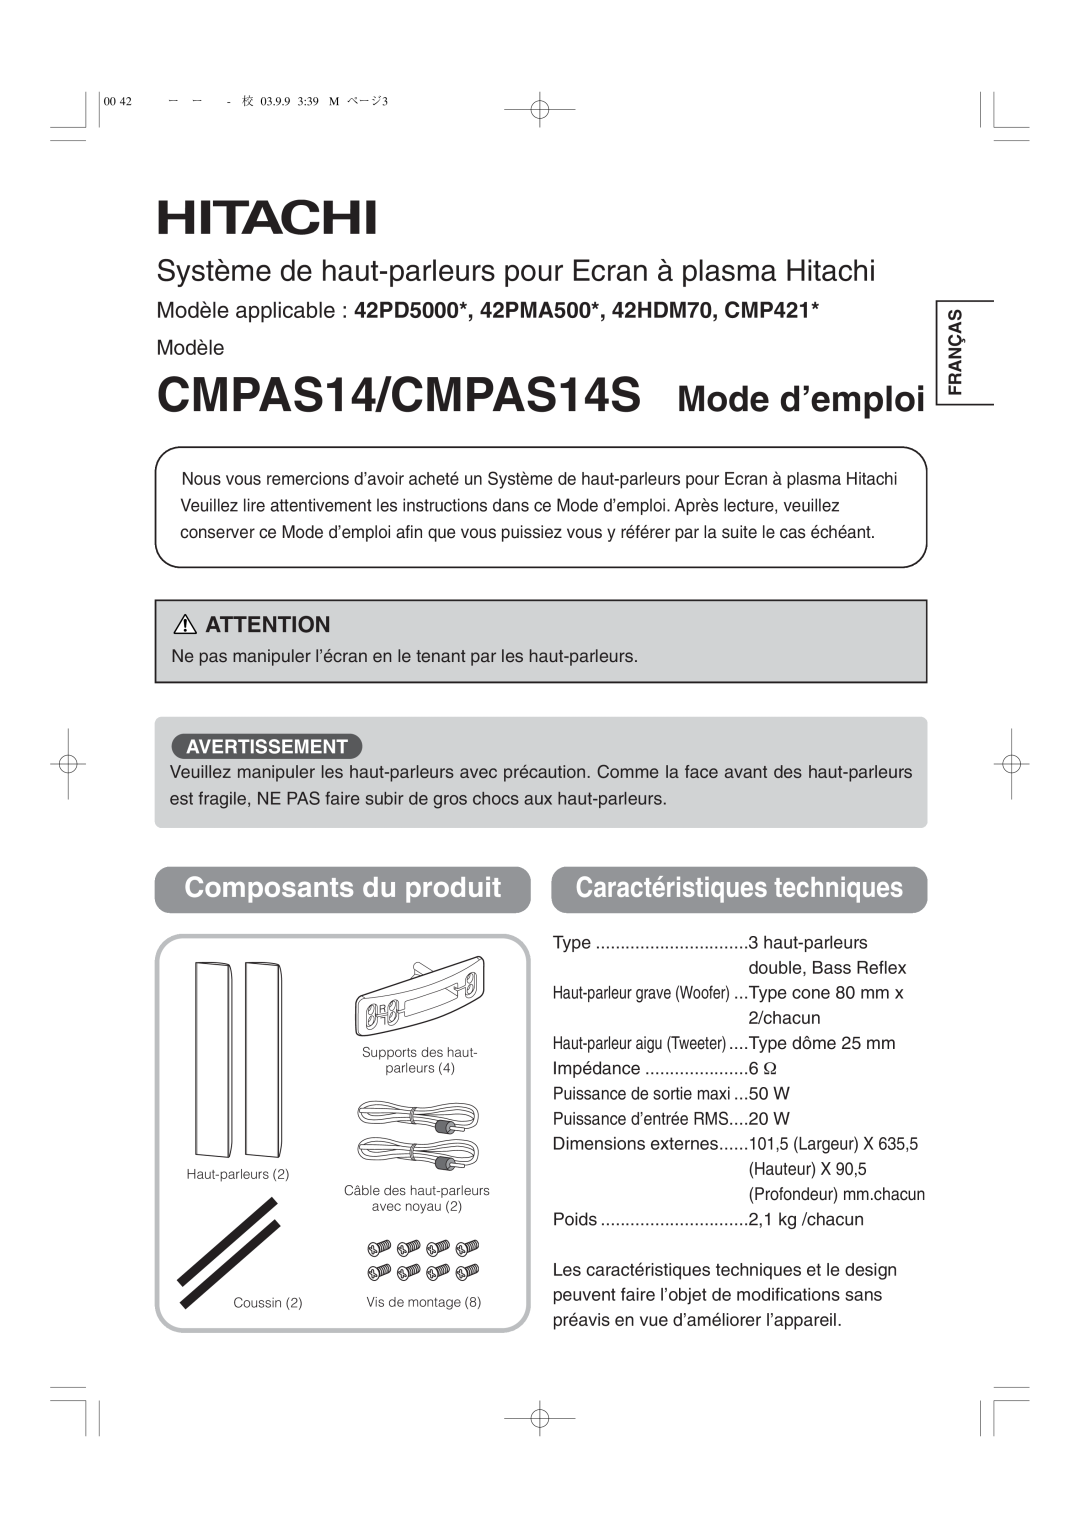 Hitachi 42PD5000 CMPAS14/CMPAS14S Mode d’emploi, Système de haut-parleurs pour Ecran à plasma Hitachi, Modèle, Franças 